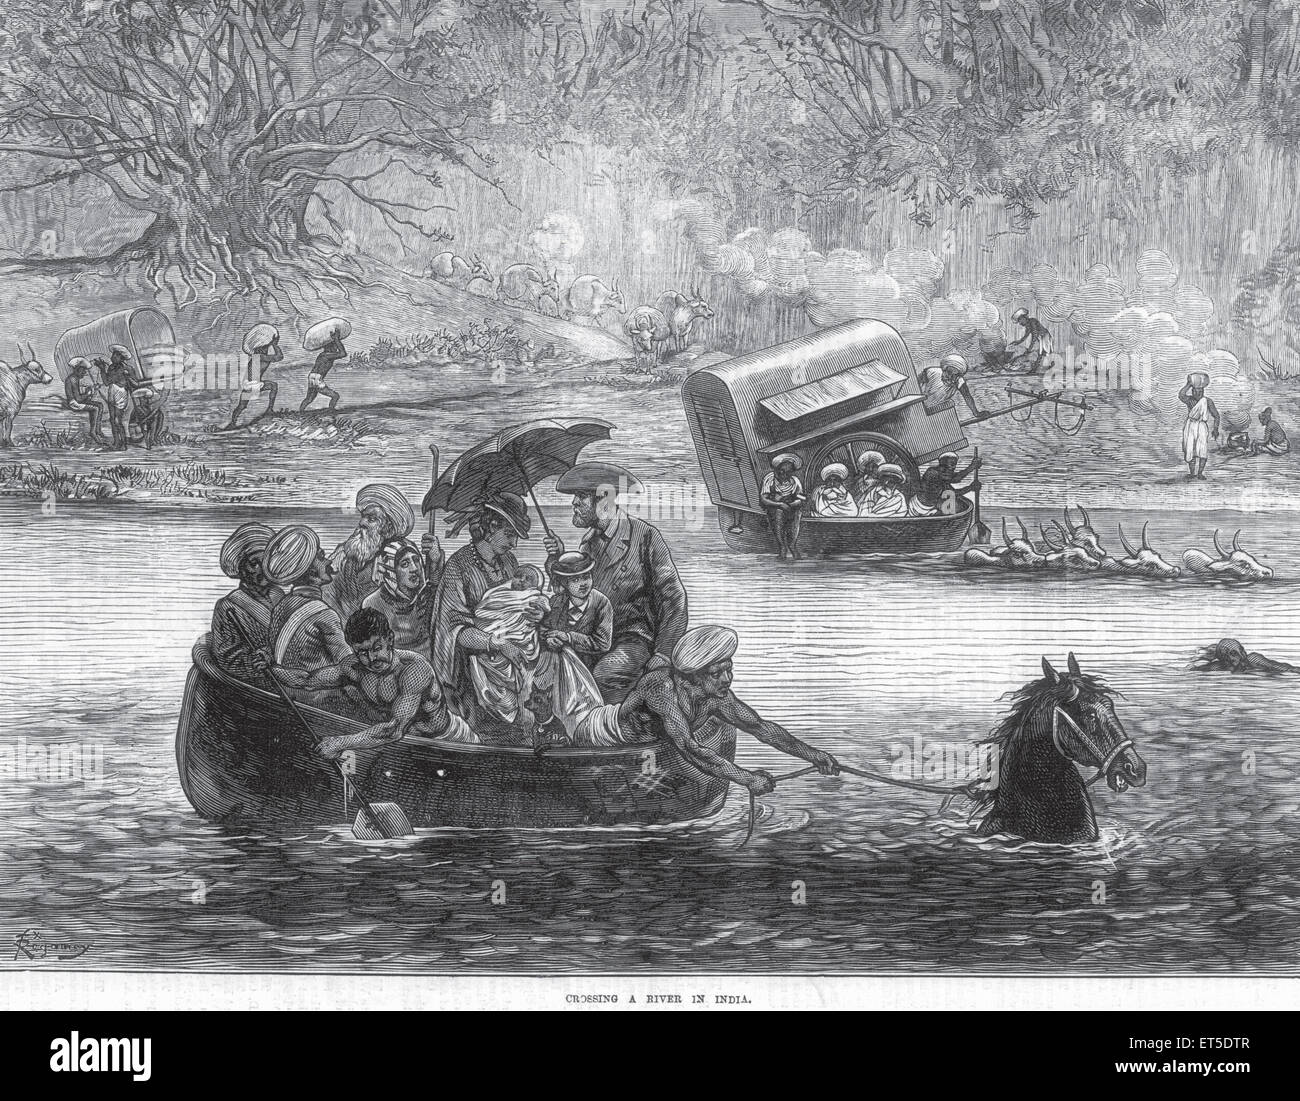 Famille britannique traversant la rivière en bateau tiré par cheval, Inde, Asie, asiatique, Indien, ancienne gravure du xixe siècle Banque D'Images